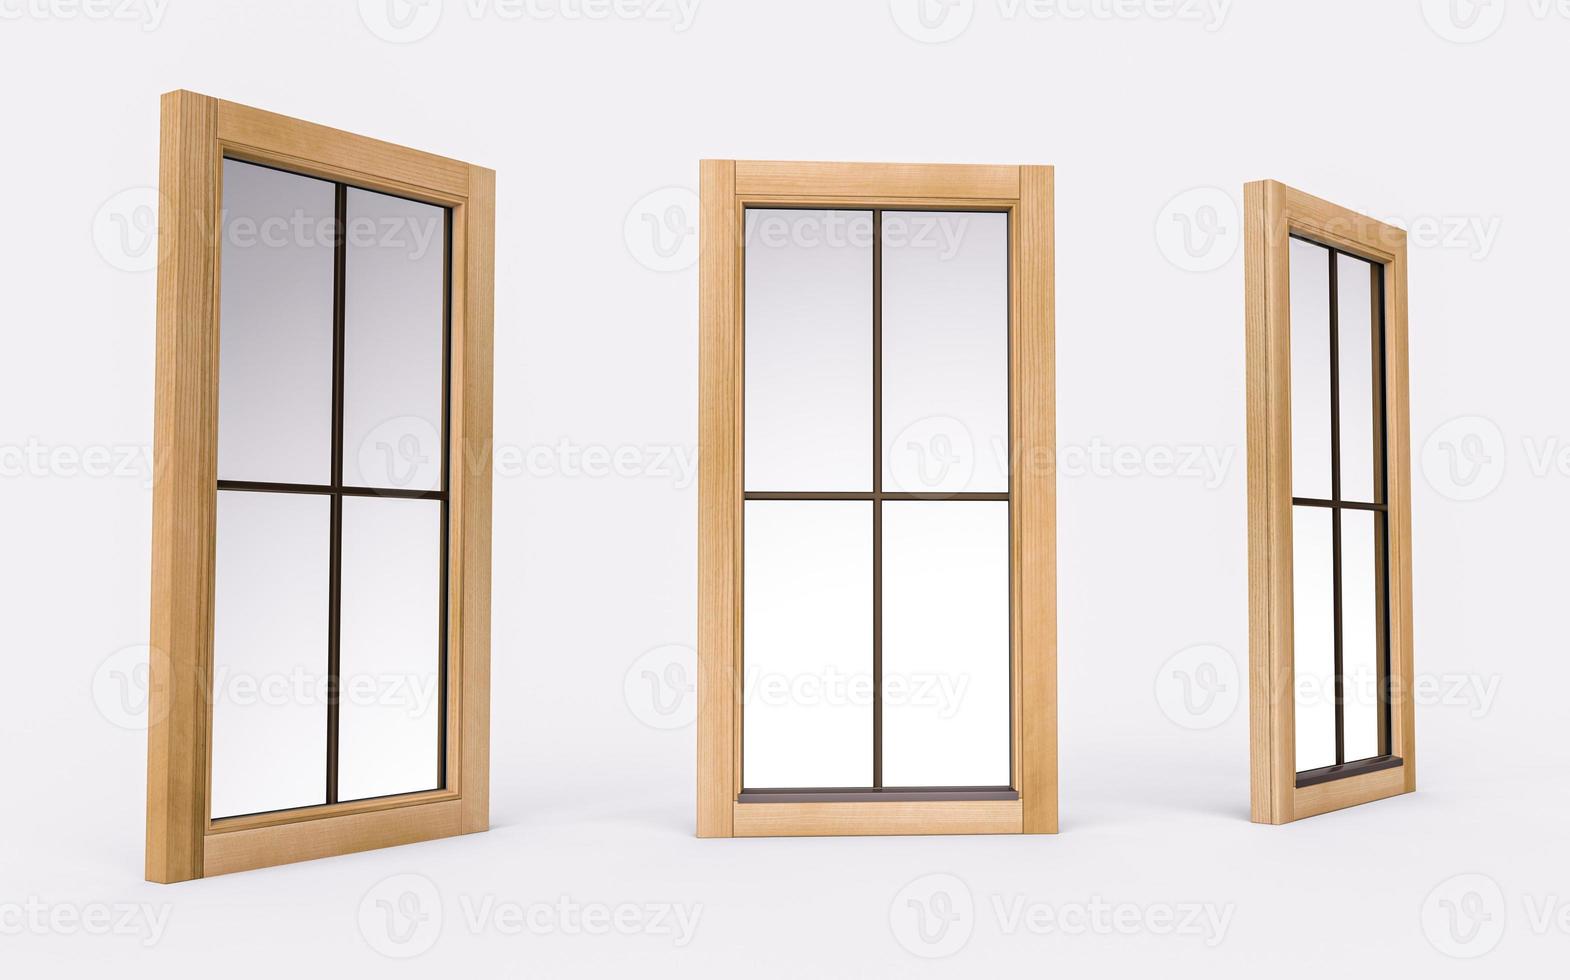 vertikal rektangel träfönster isolerad på vit bakgrund 3d illustration foto